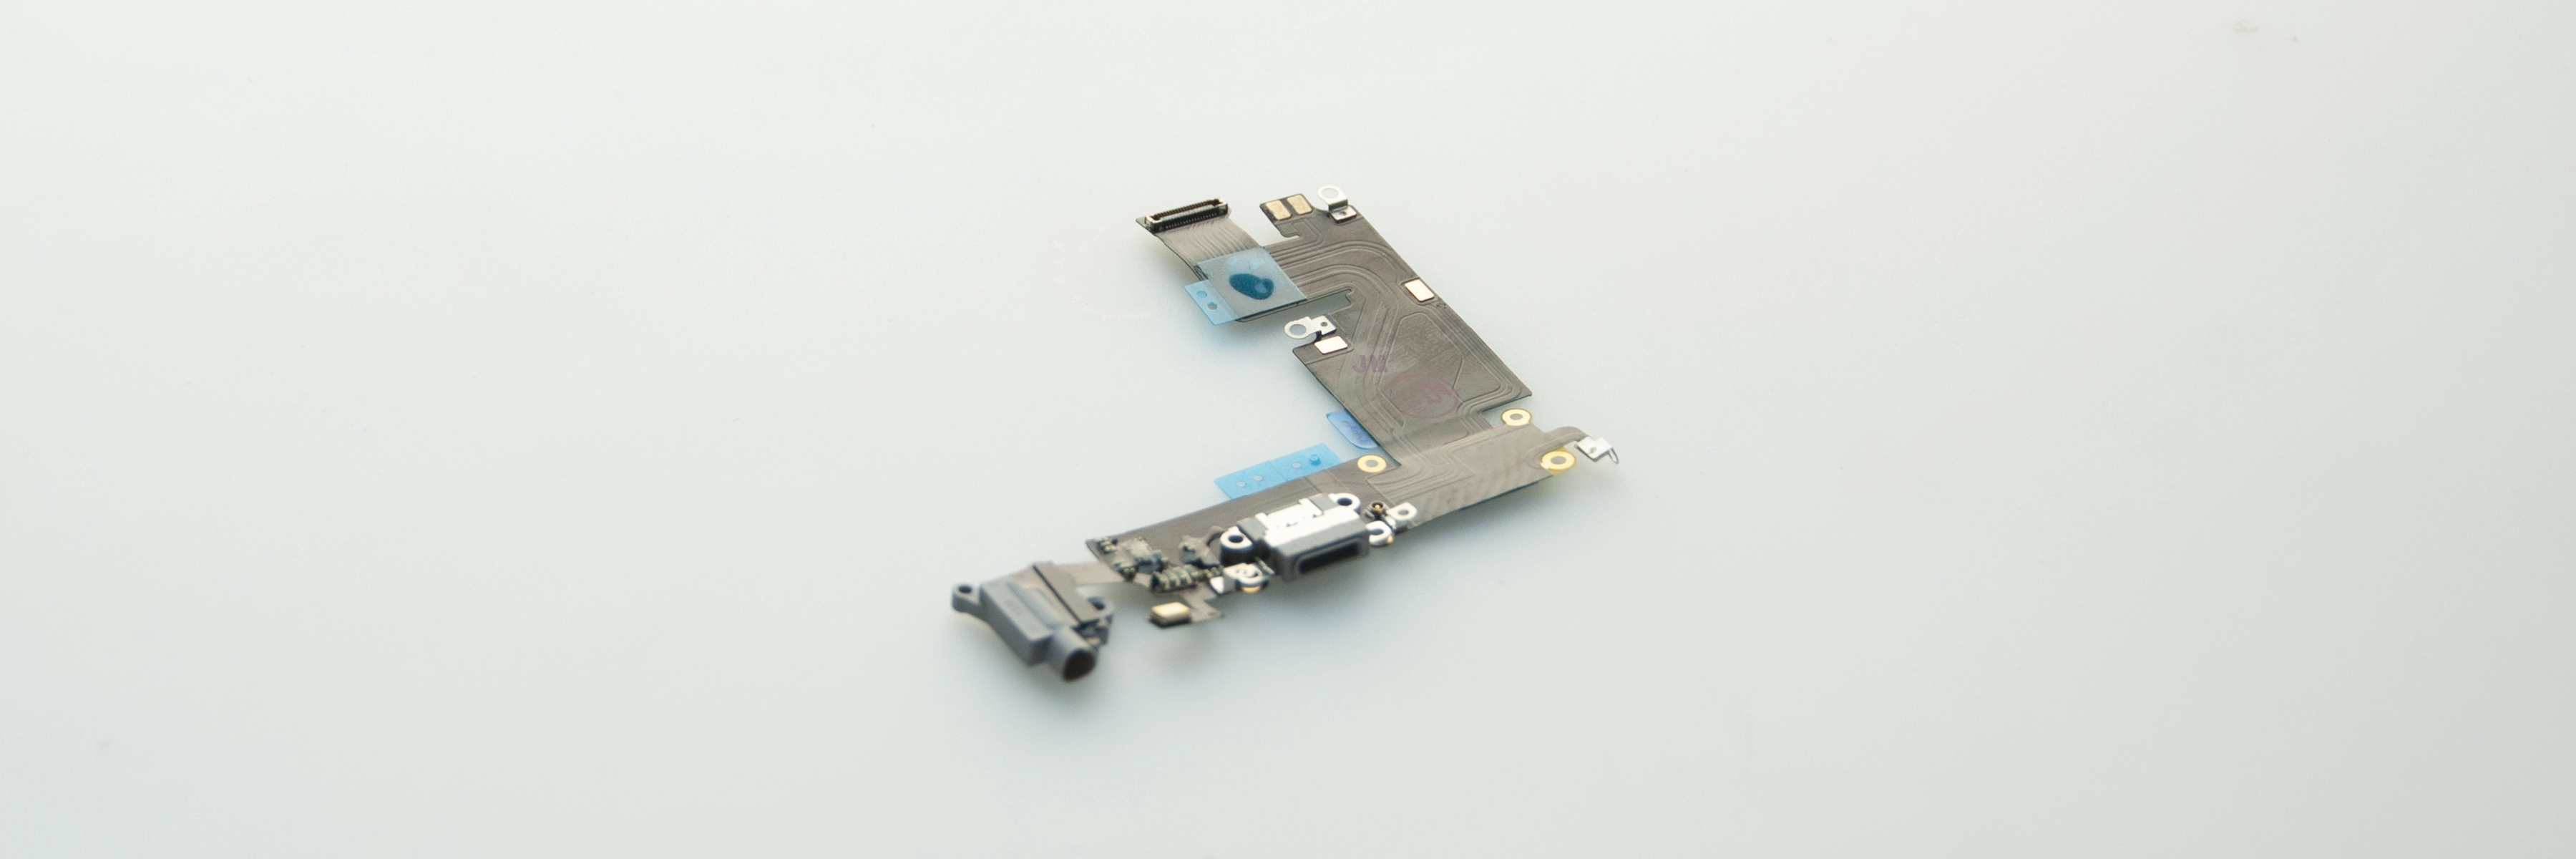 Zamenjava sklopa konektorja Lightning za iPhone 6S.